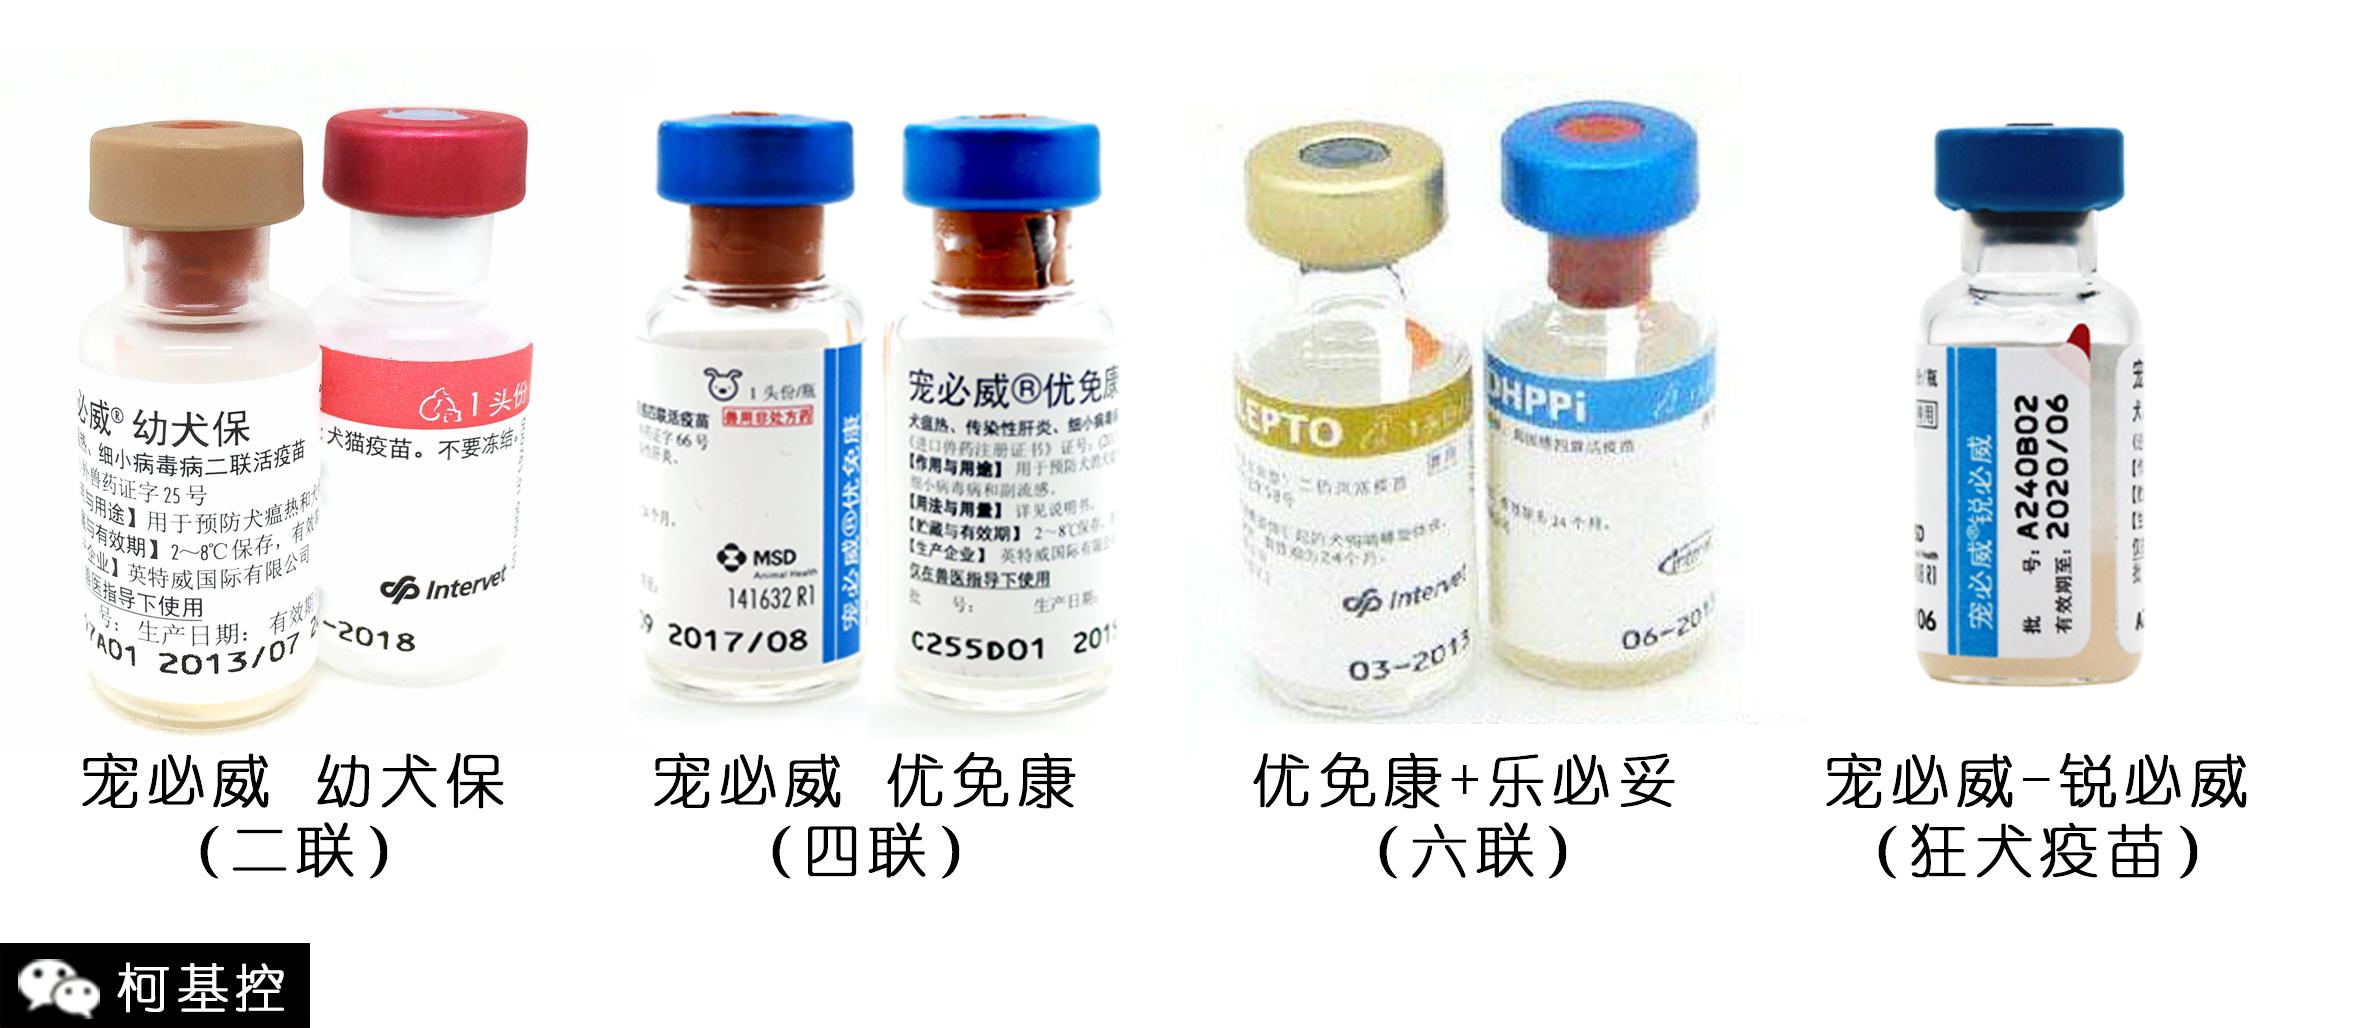 犬瘟热病毒荧光PCR检测试剂盒-苏州华胜生物技术有限公司